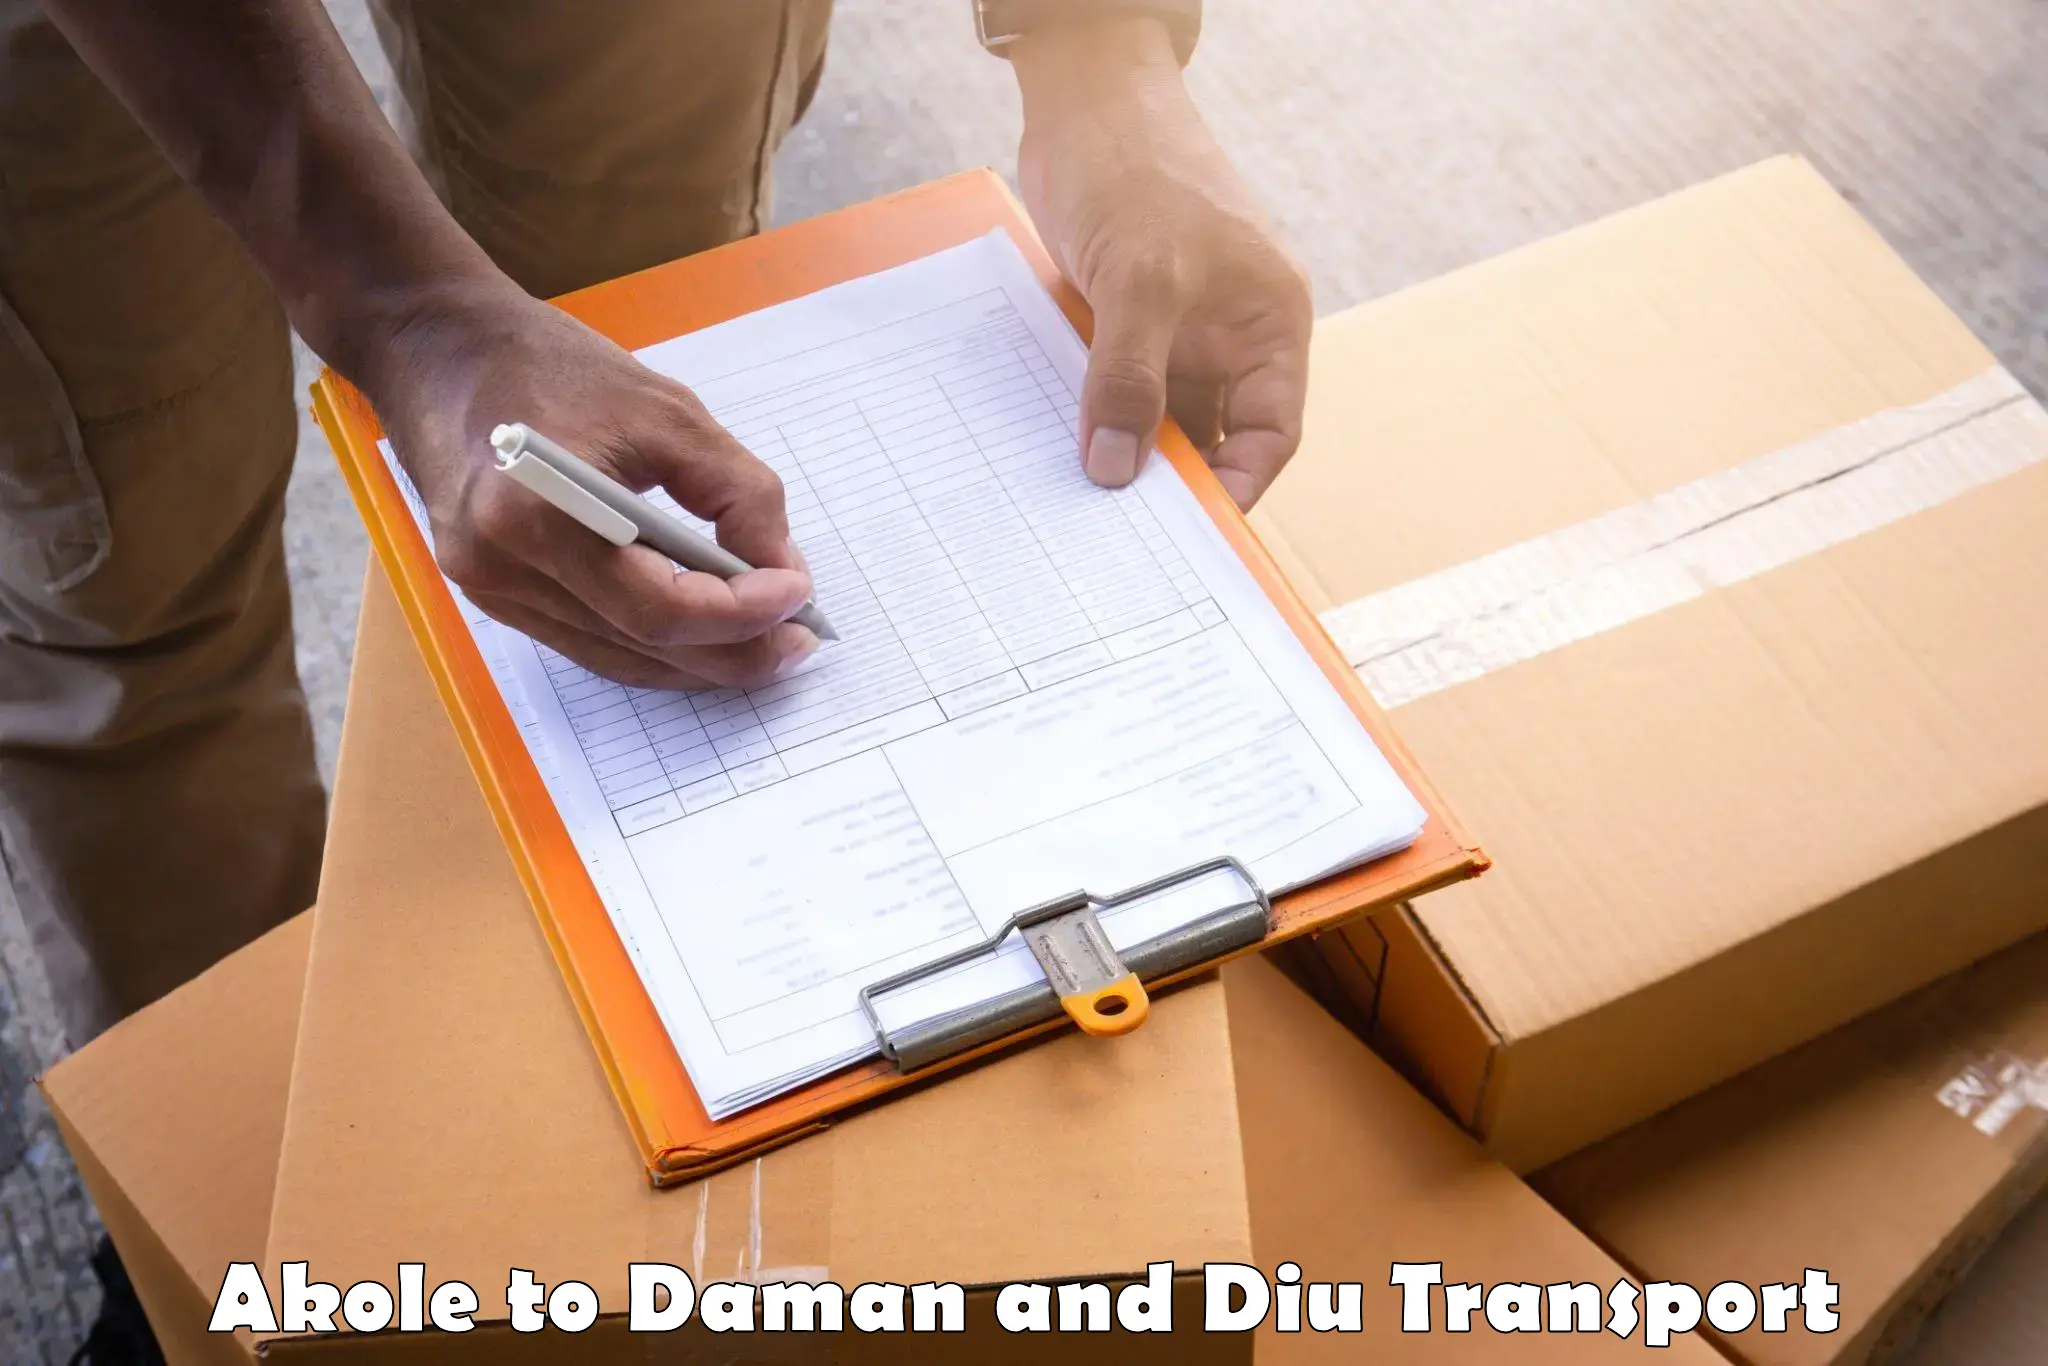 Two wheeler parcel service Akole to Daman